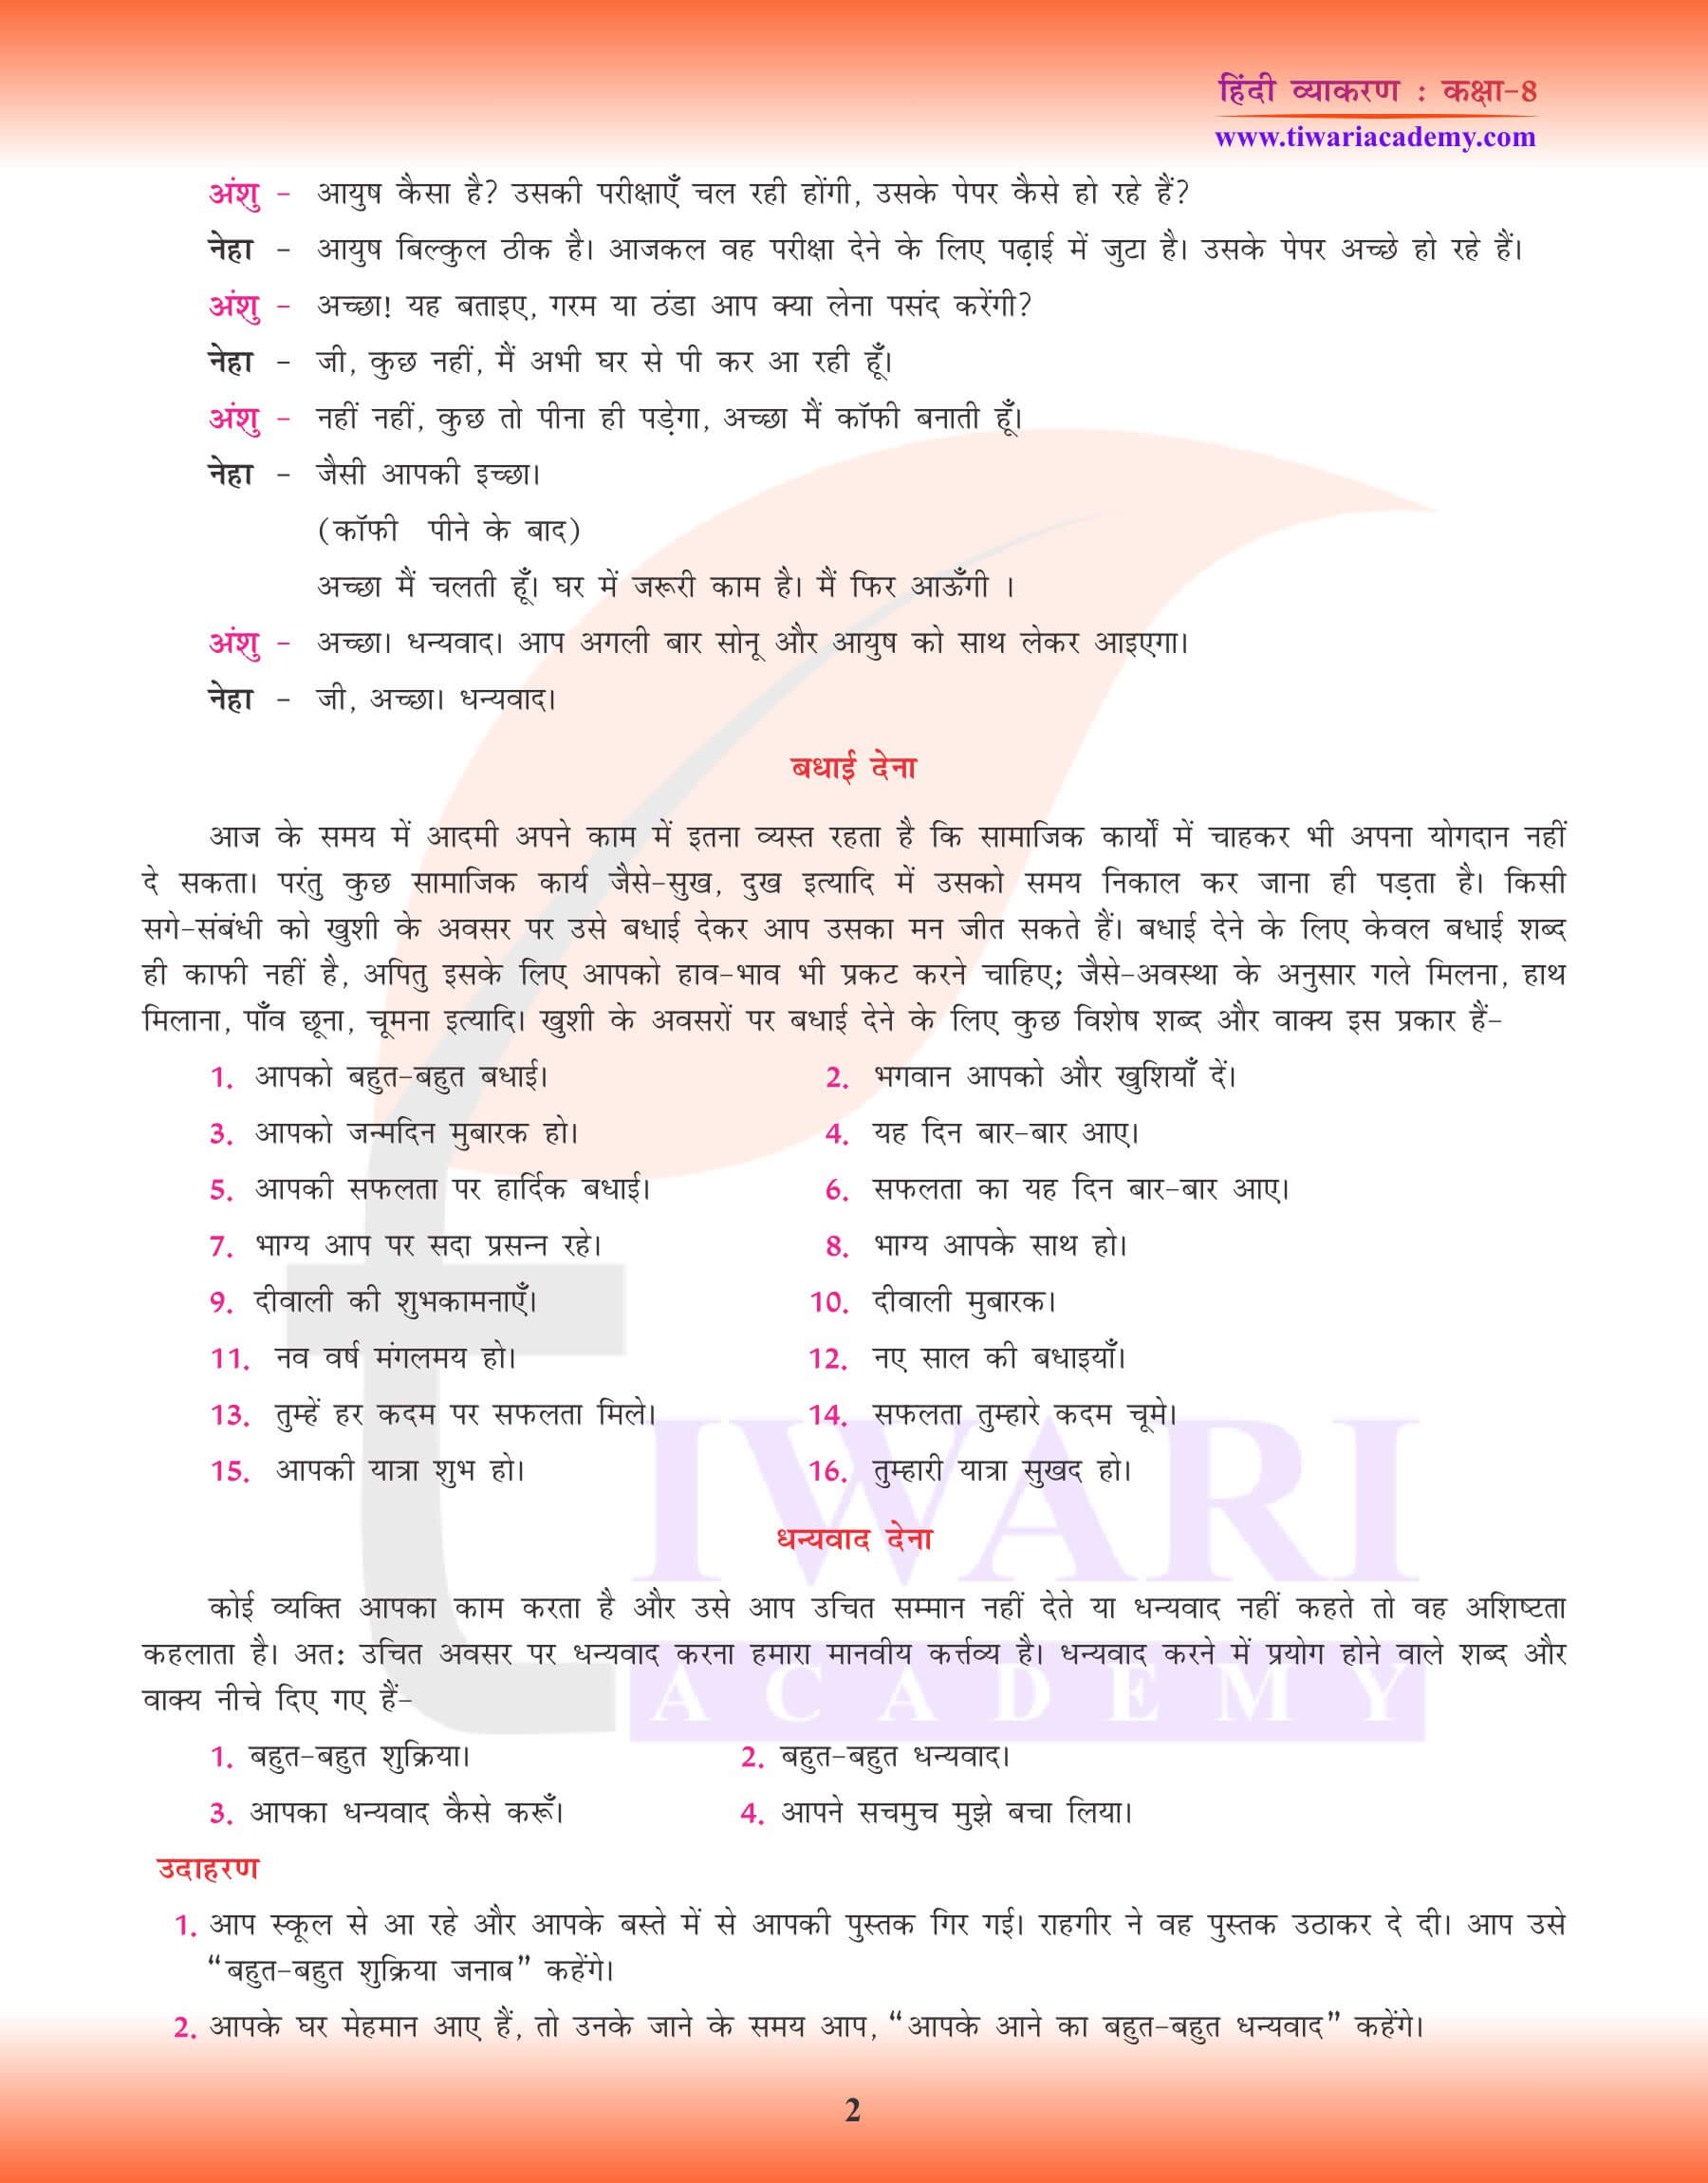 कक्षा 8 हिंदी व्याकरण में मौखिक अभिव्यक्ति एक्सरसाइज